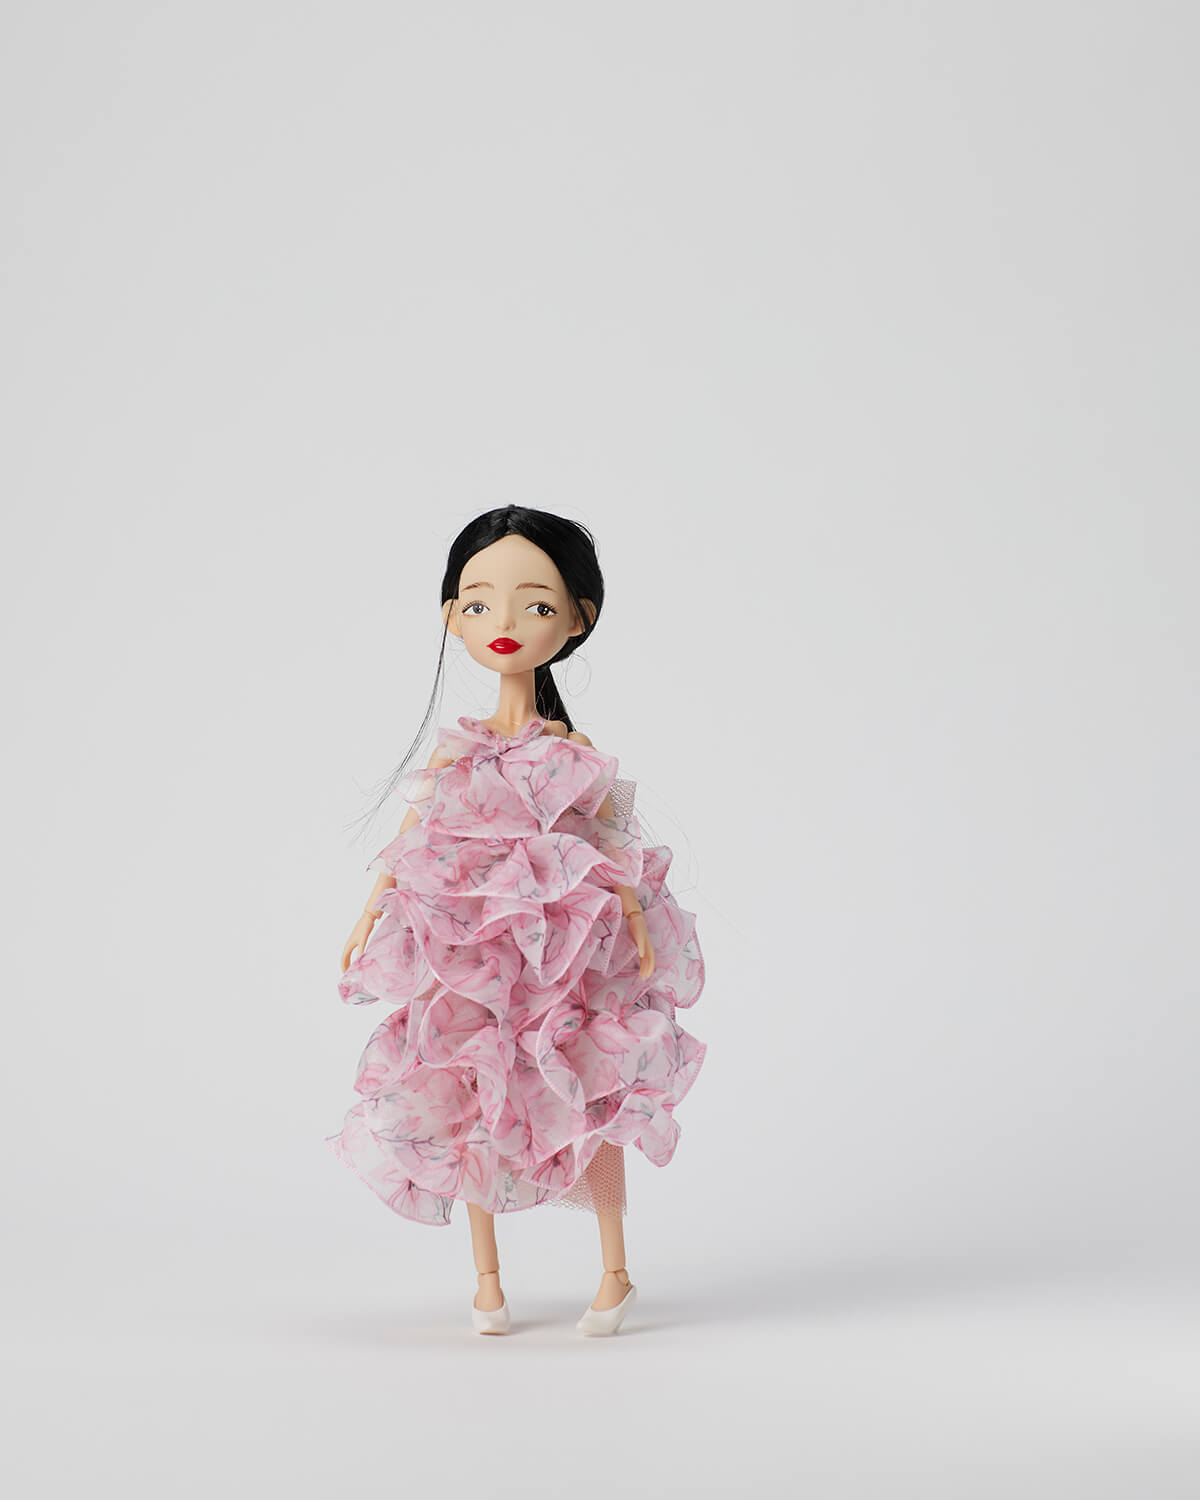 Ning Lau Handmade Doll - Patterned Chiffon Dress